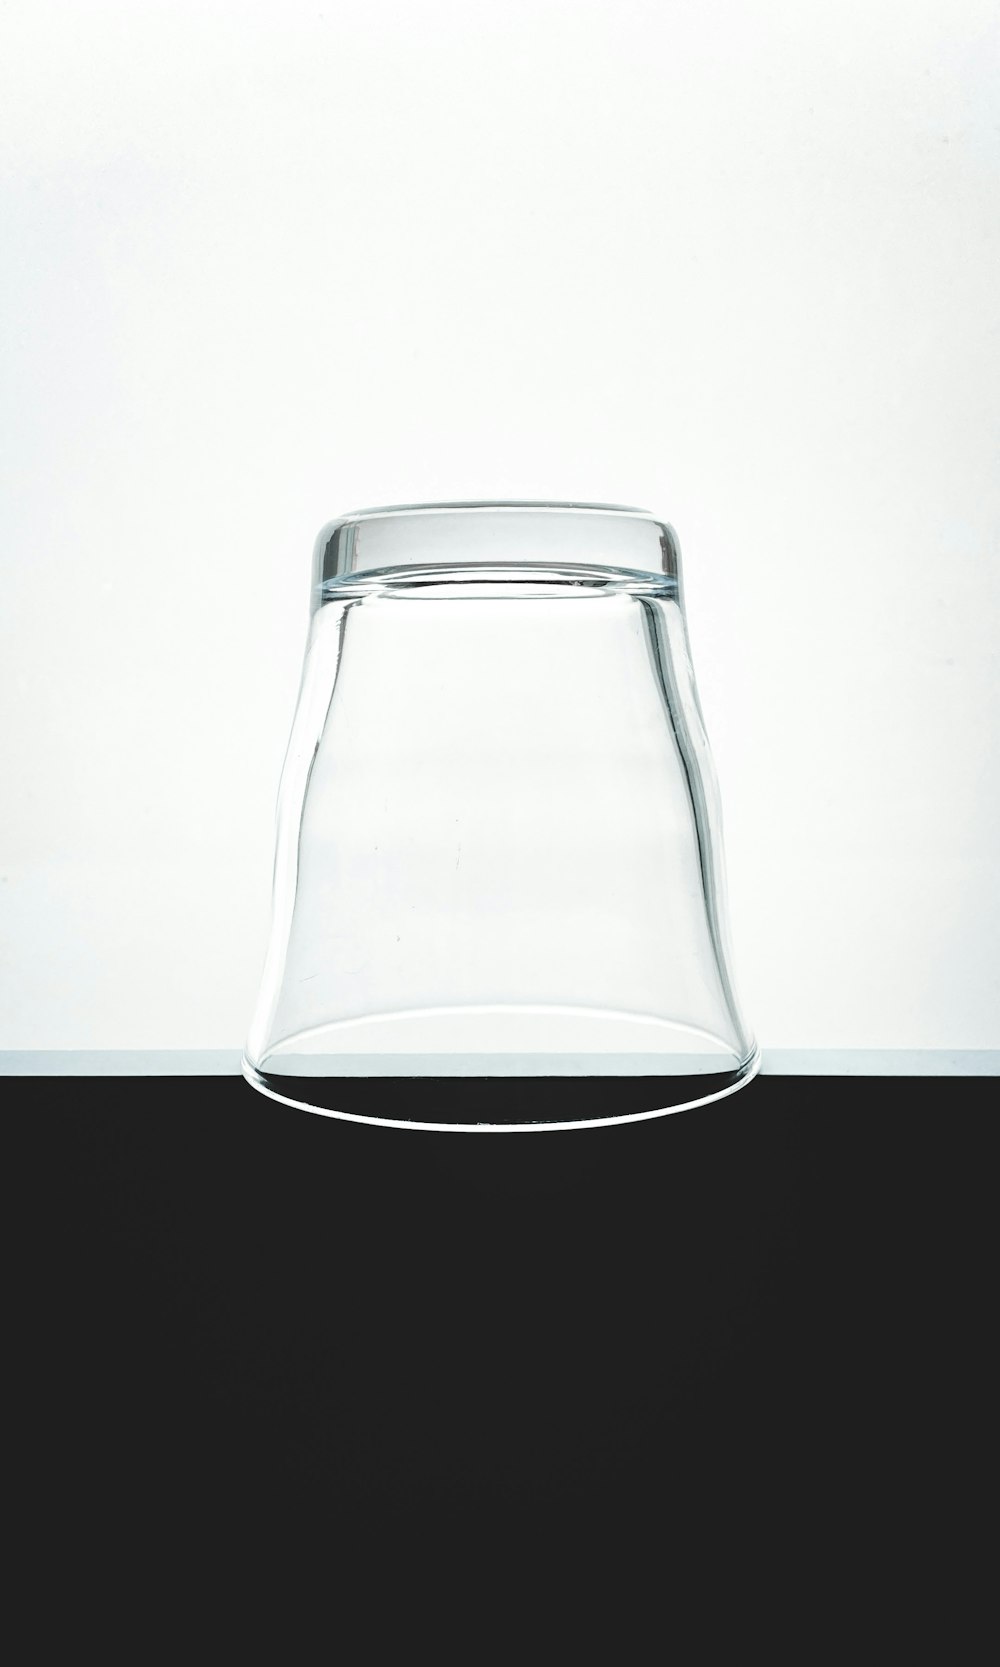 水と透明なガラス瓶